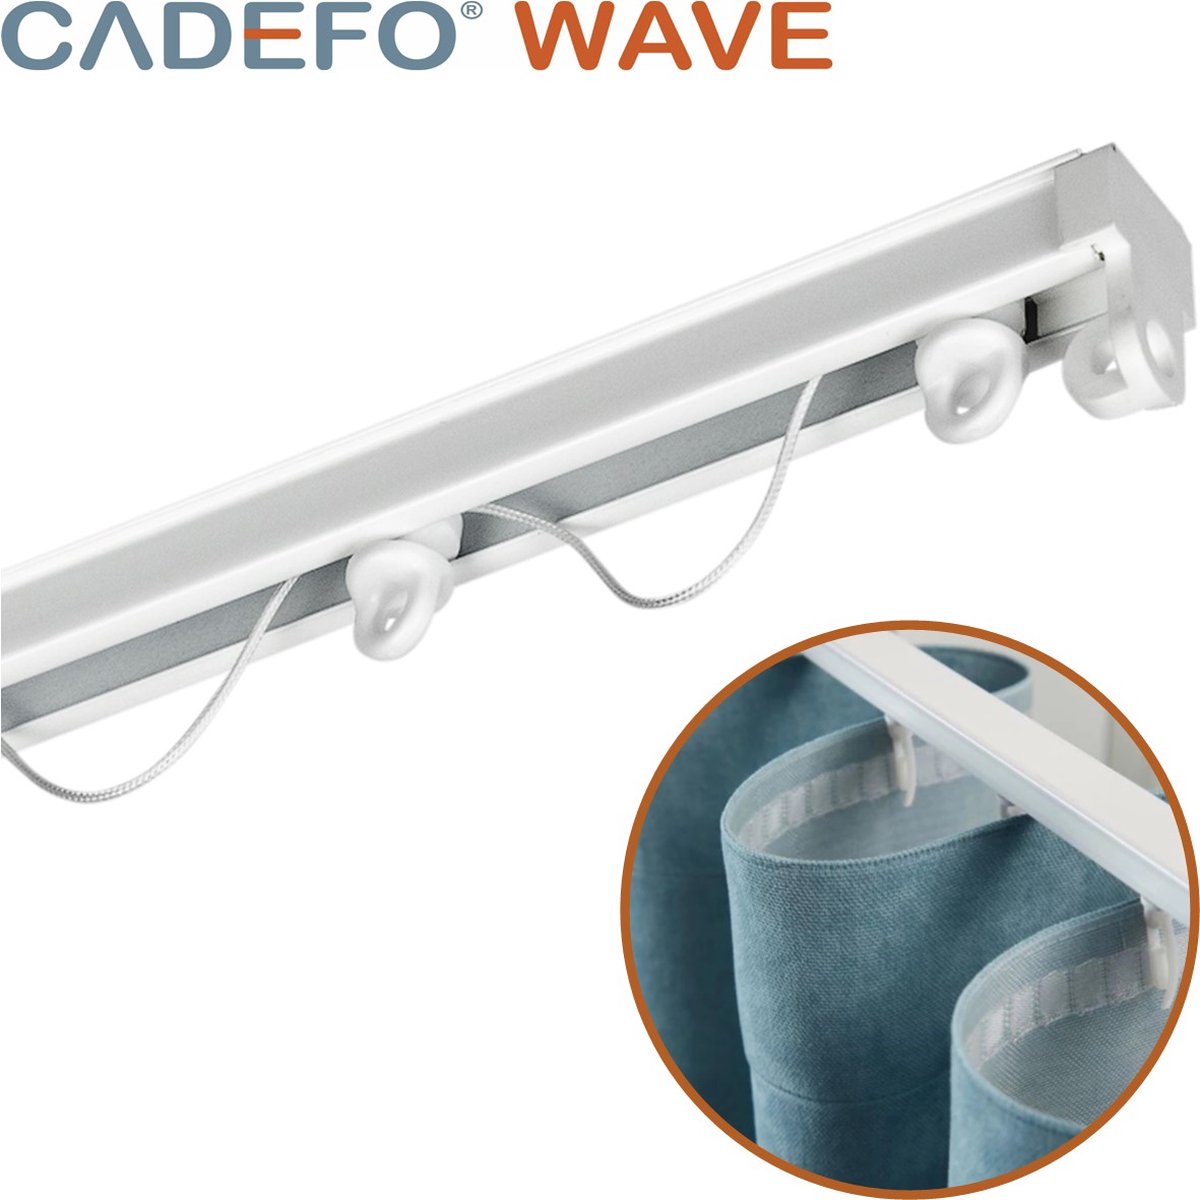 CADEFO WAVE (501 - 550 cm) Gordijnrails - Compleet op maat! - UIT 1 STUK - Leverbaar tot 6 meter - Plafondbevestiging - Lengte 501 cm